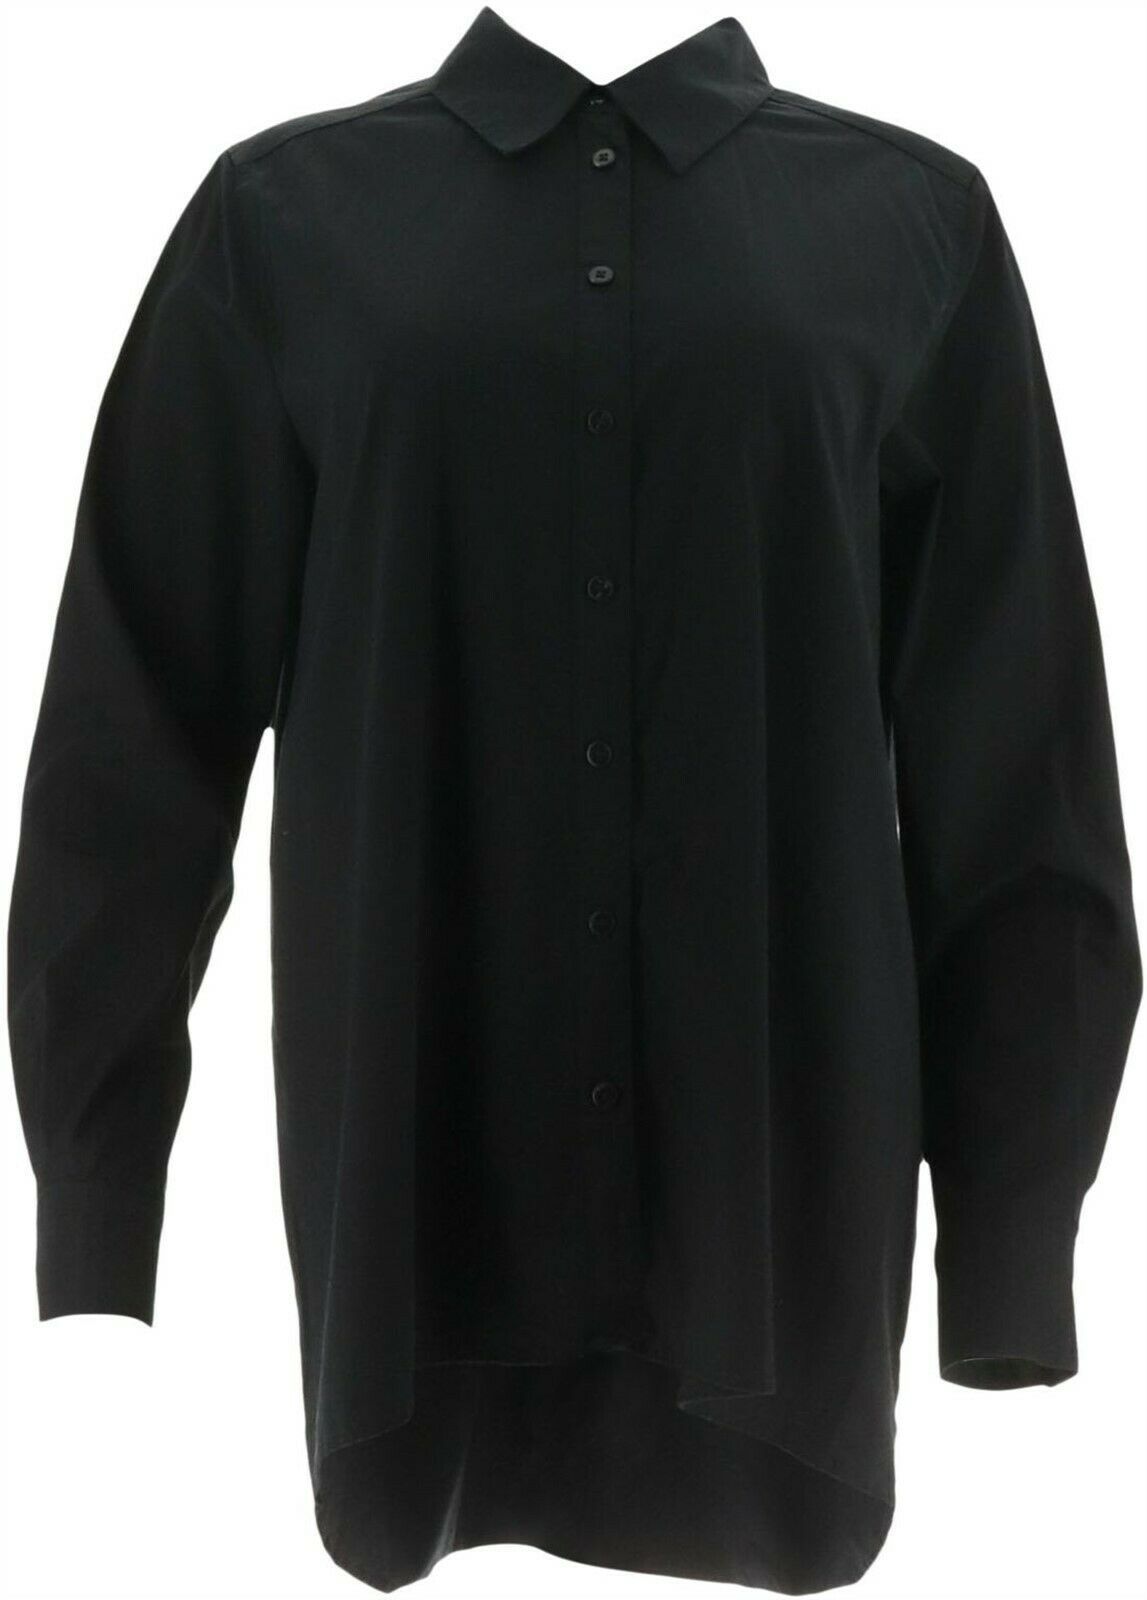 Susan Graver Stretch Cotton Button Shirt Placket Black 2 NEW A269218